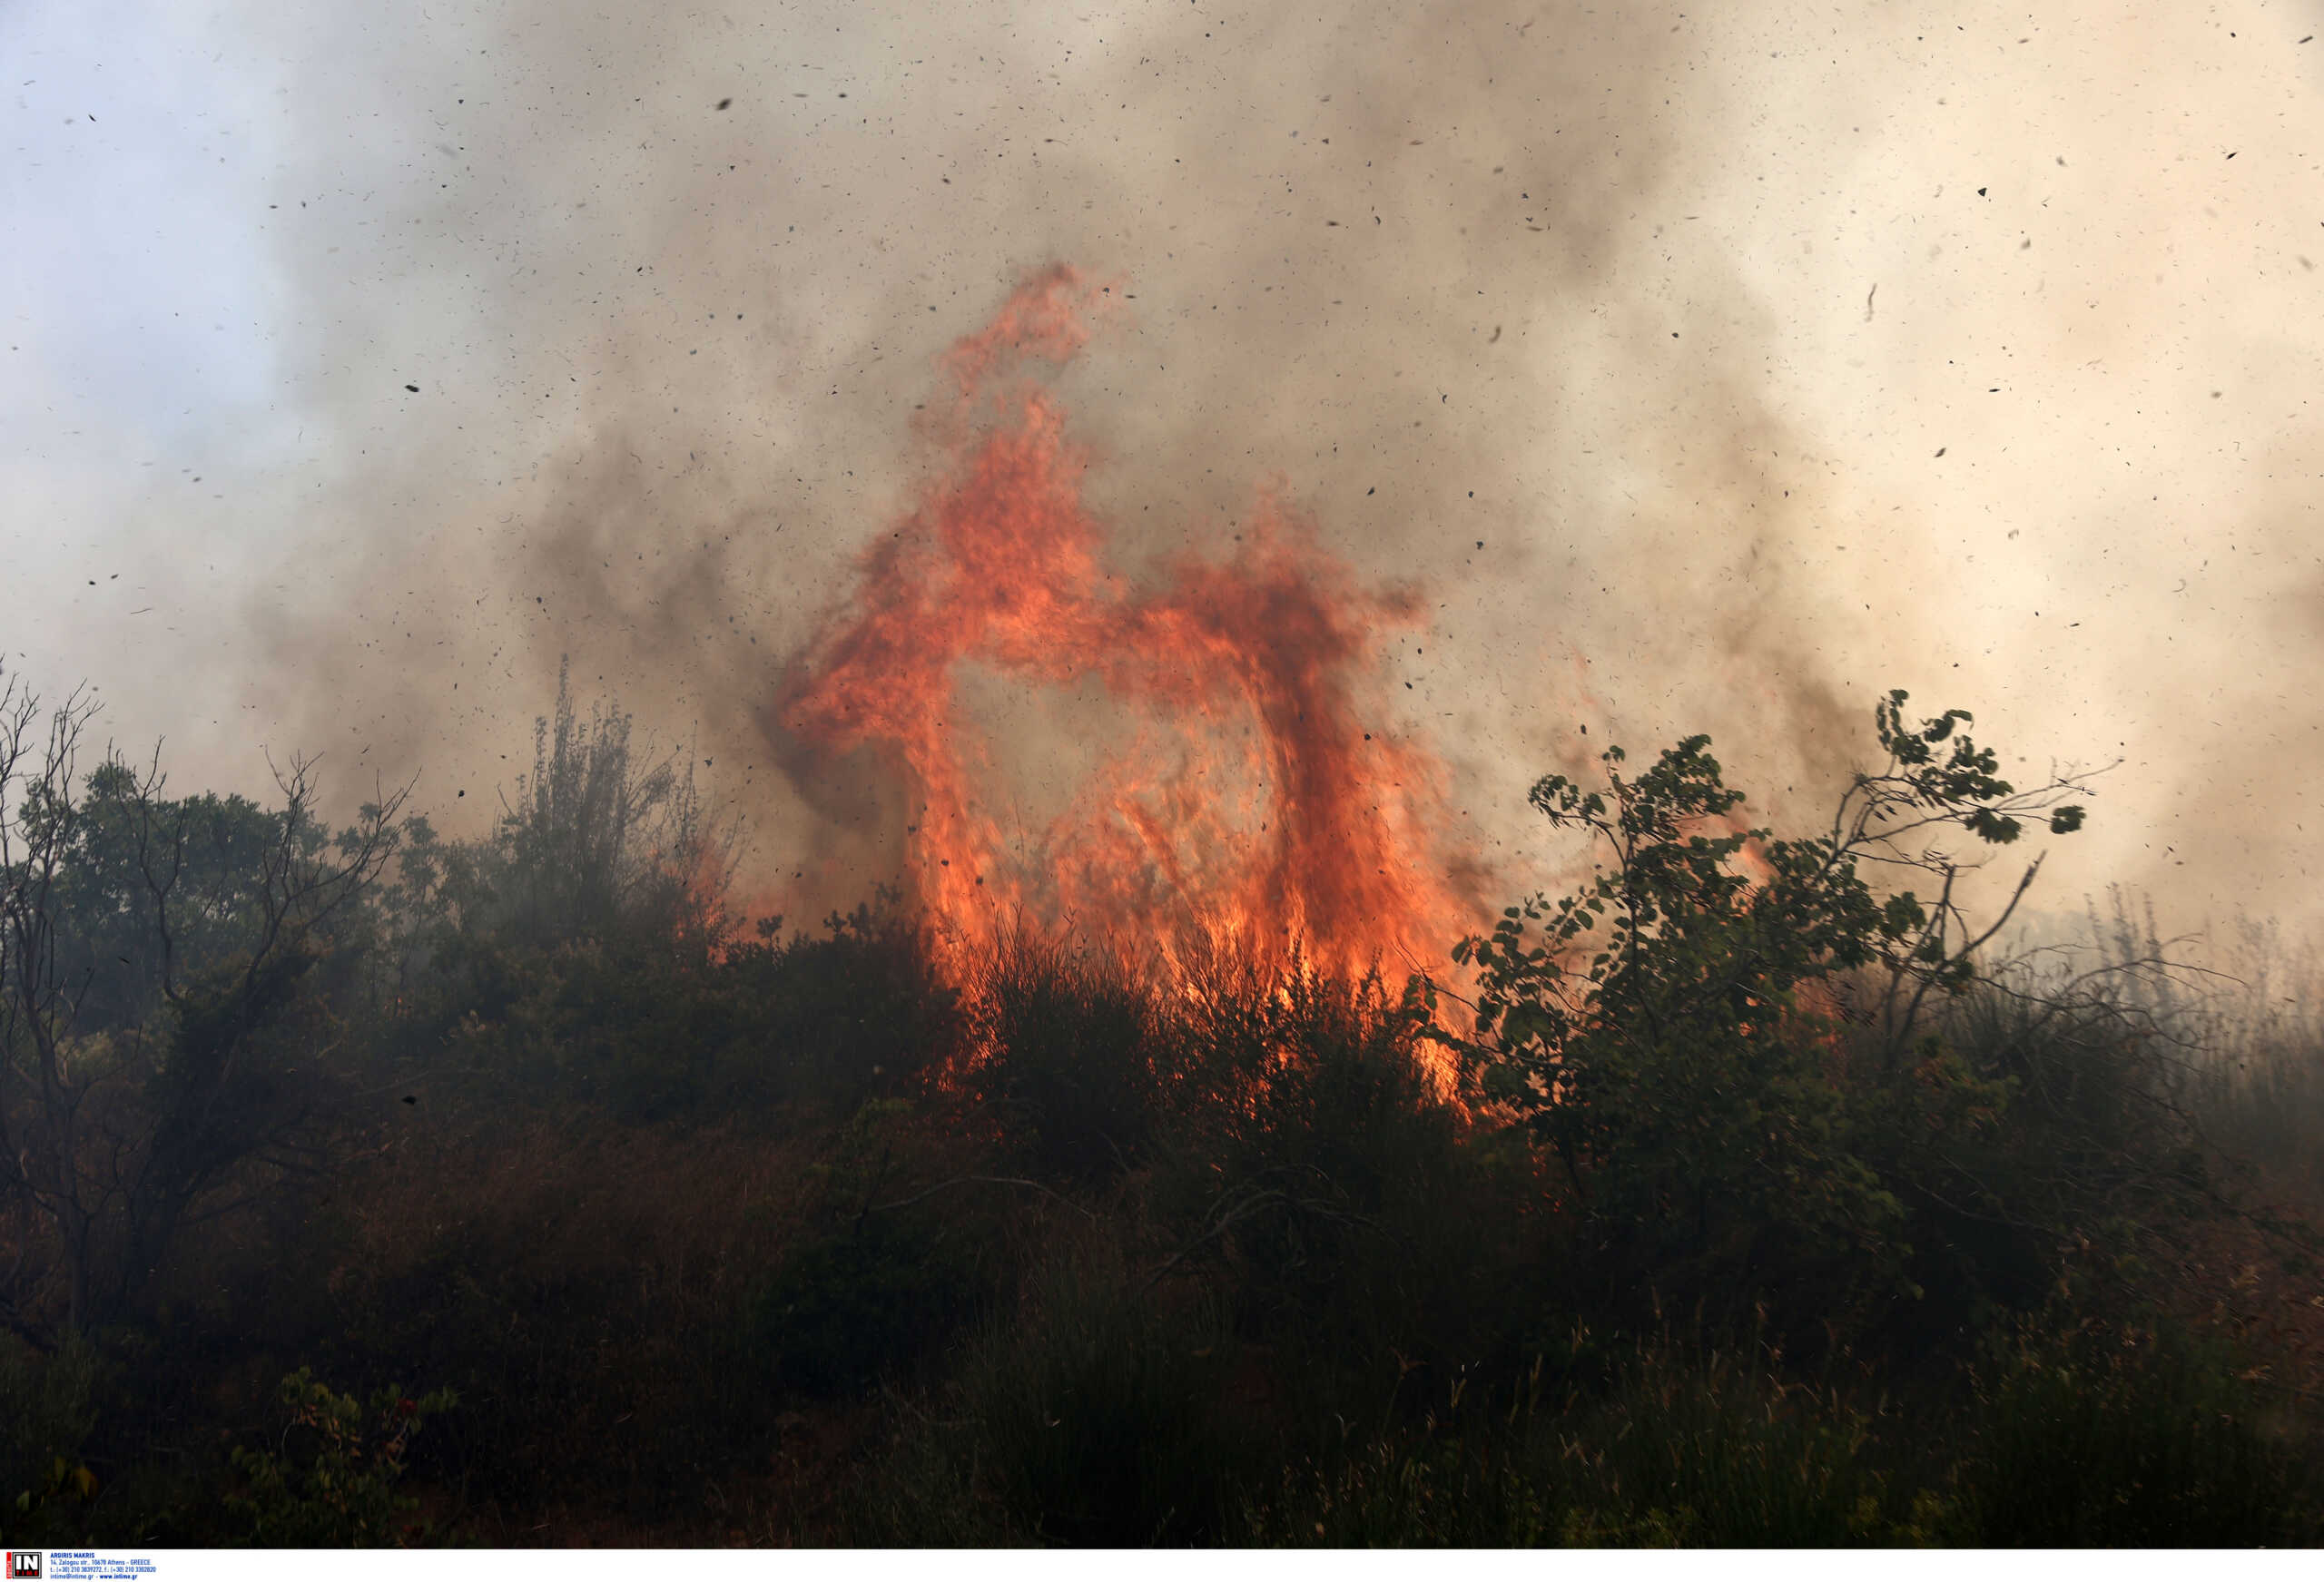 Αττική, Στερεά Ελλάδα, Πελοπόννησος και άλλες 5 περιφέρειες στην κατηγορία πολύ υψηλού κινδύνου πυρκαγιάς αύριο Τετάρτη (09/08)